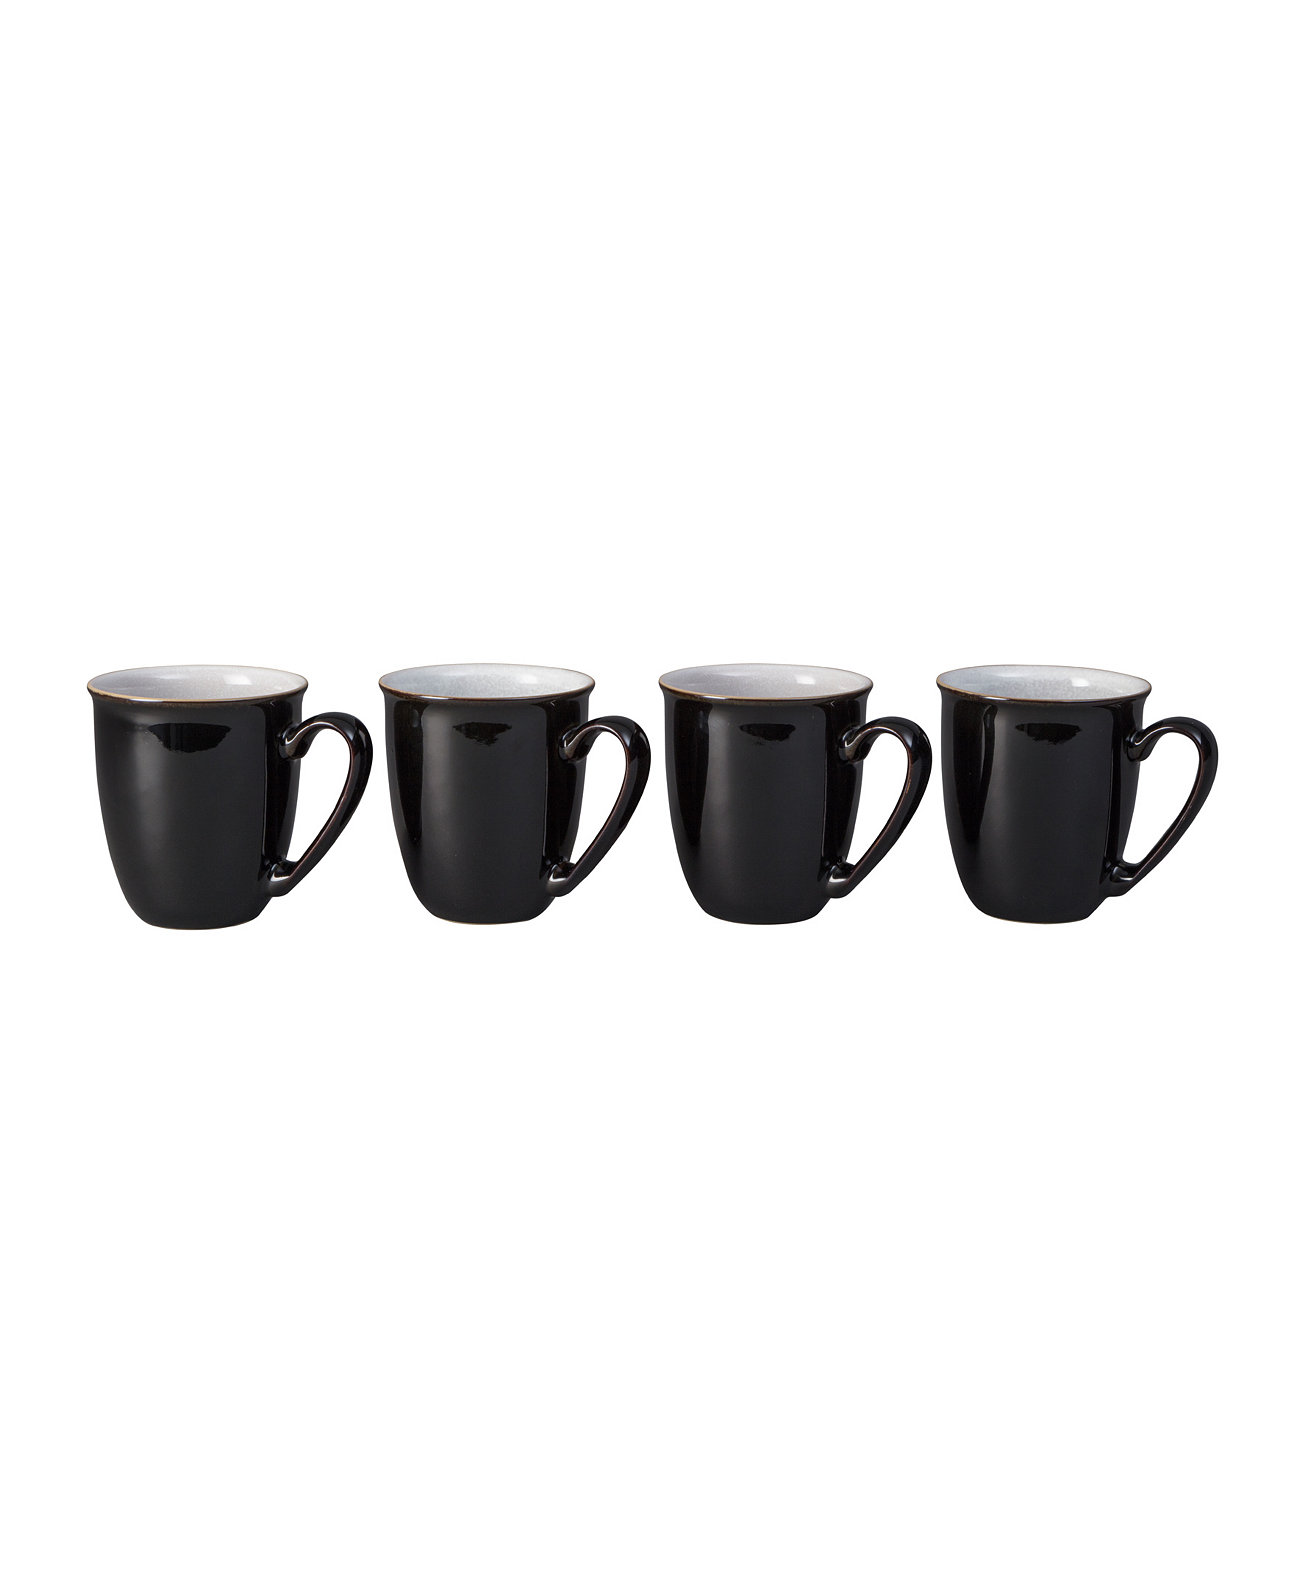 Набор чашек для кофе Elements, 4 шт., сервиз на 4 персоны Denby